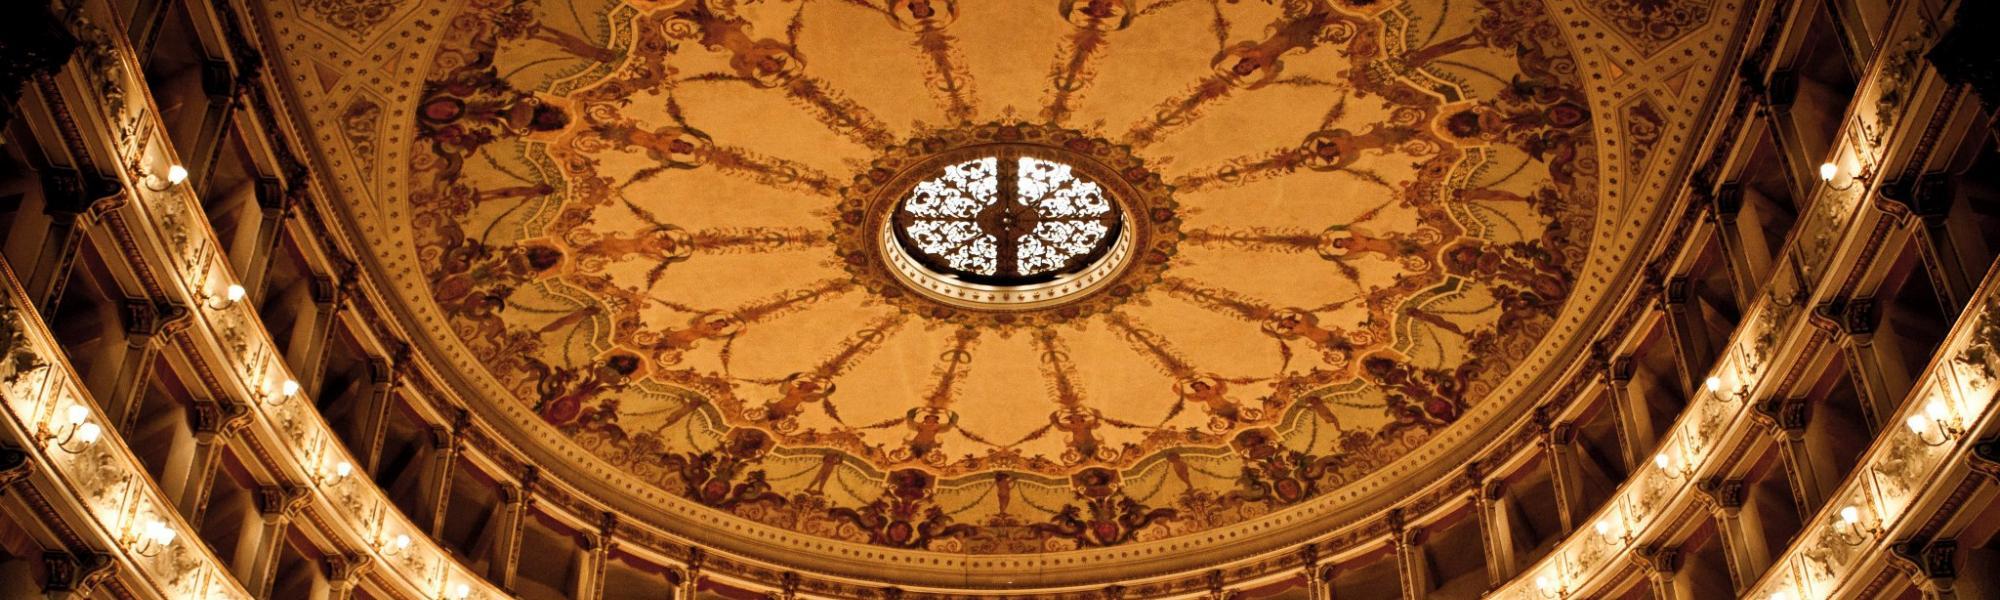 Interno, decorazione soffitto - Teatro Verdi (M. D'Amato)